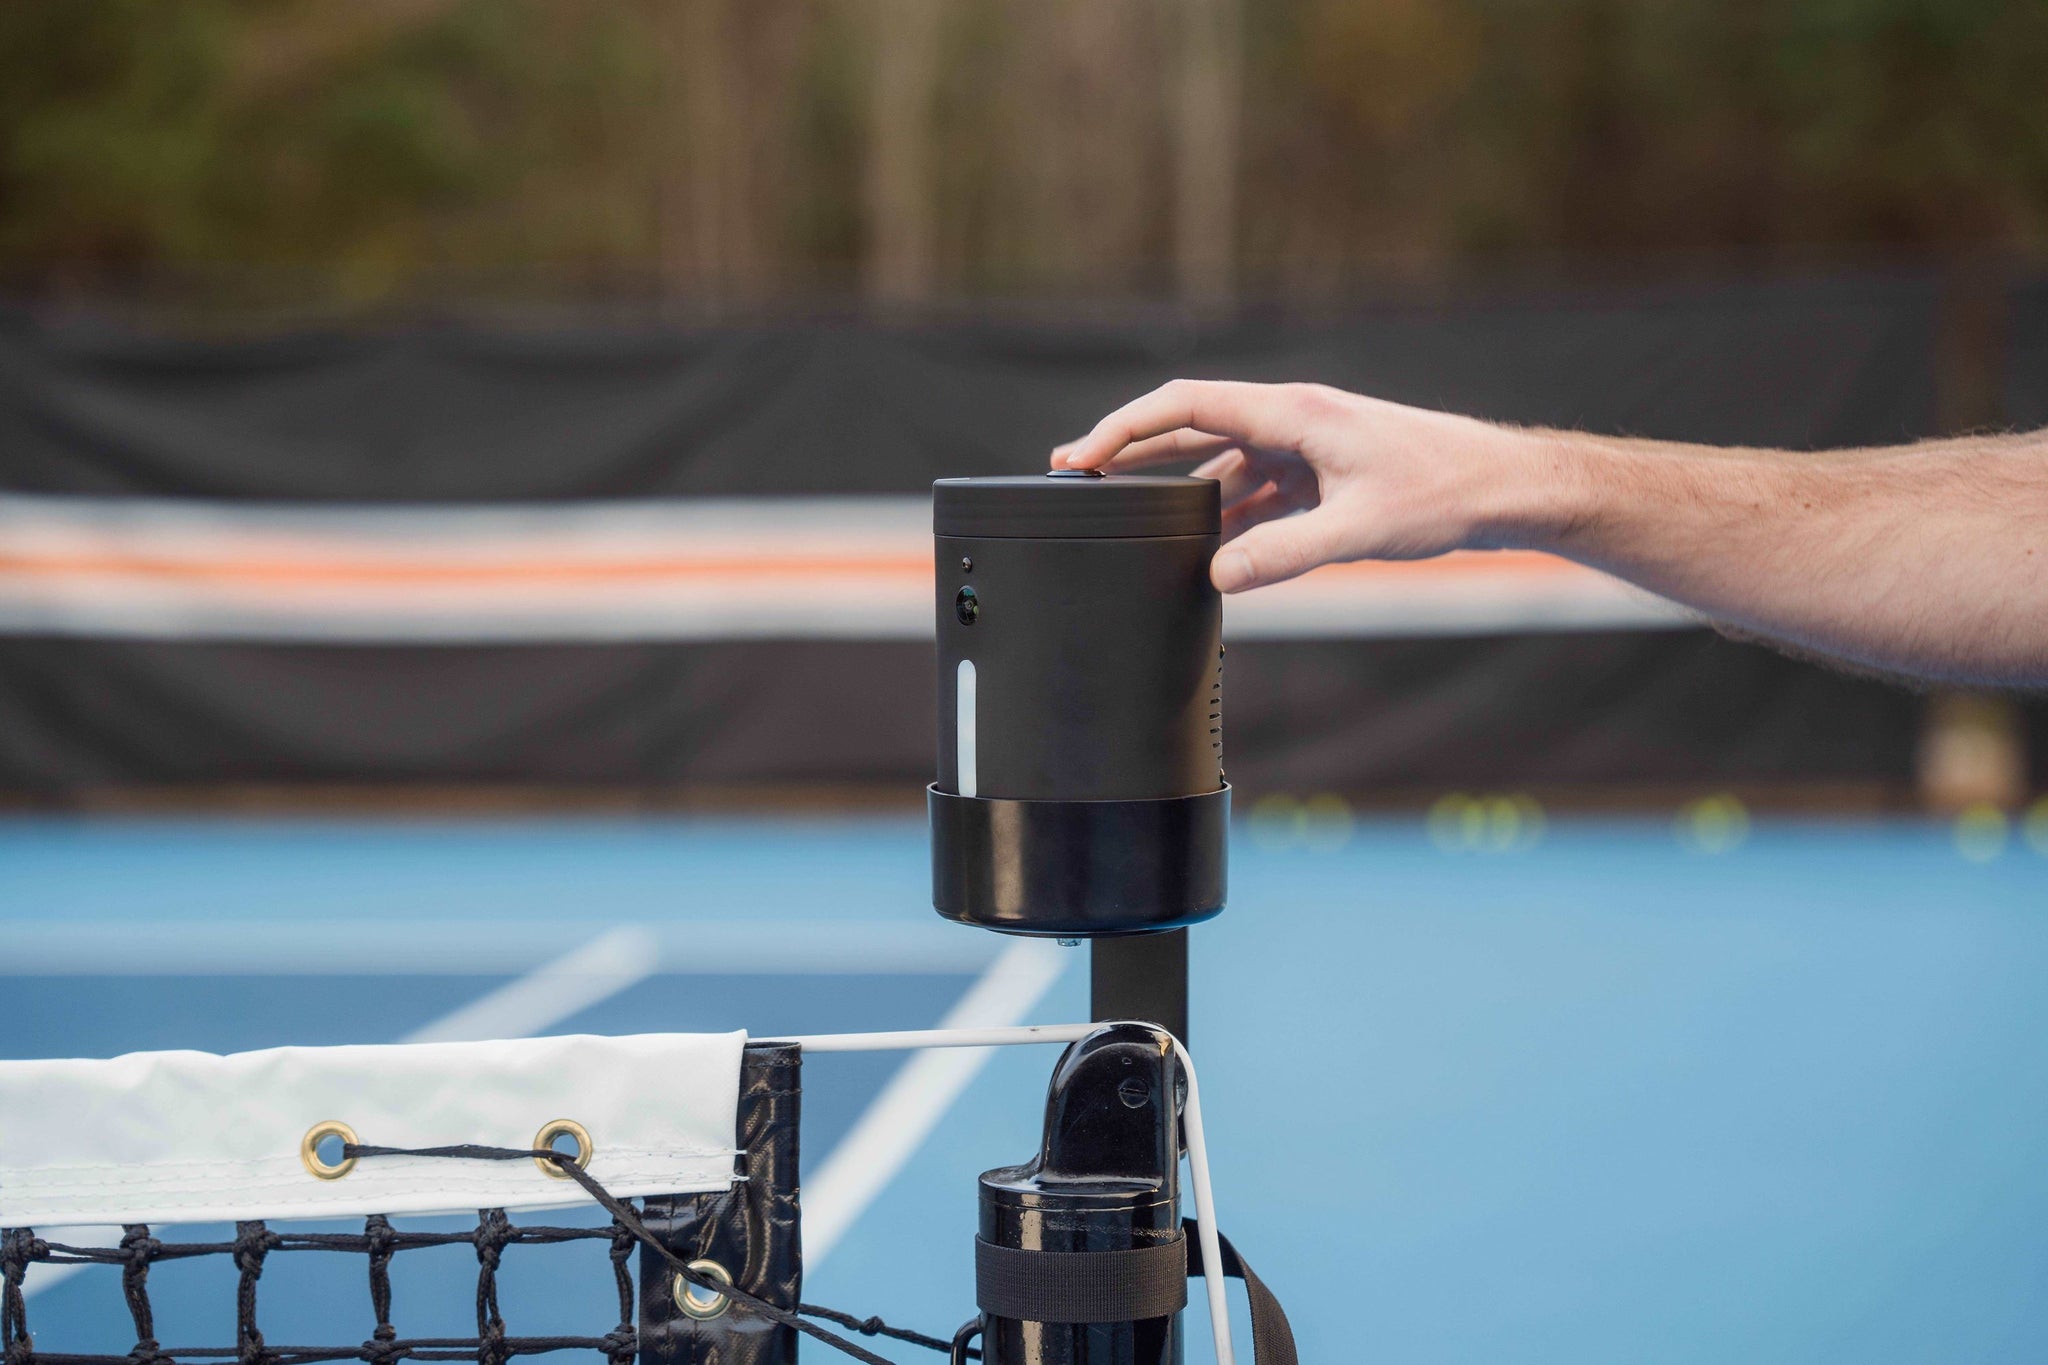 Tennibot – Le robot ramasseur de balles de tennis !